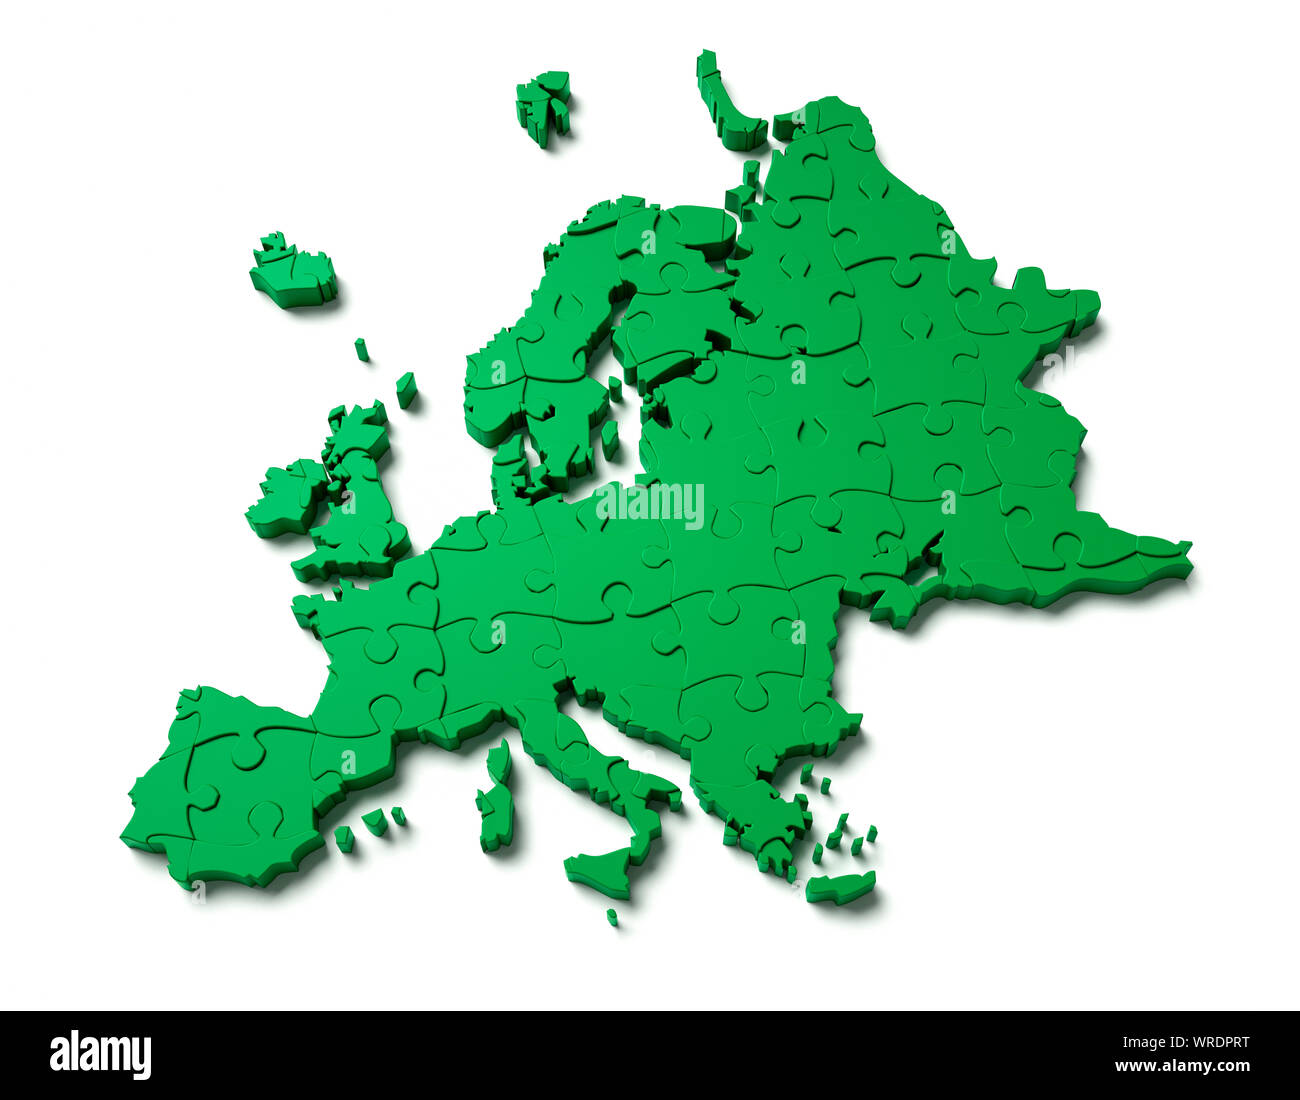 Continent de l'Europe comme un casse-tête vert Banque D'Images